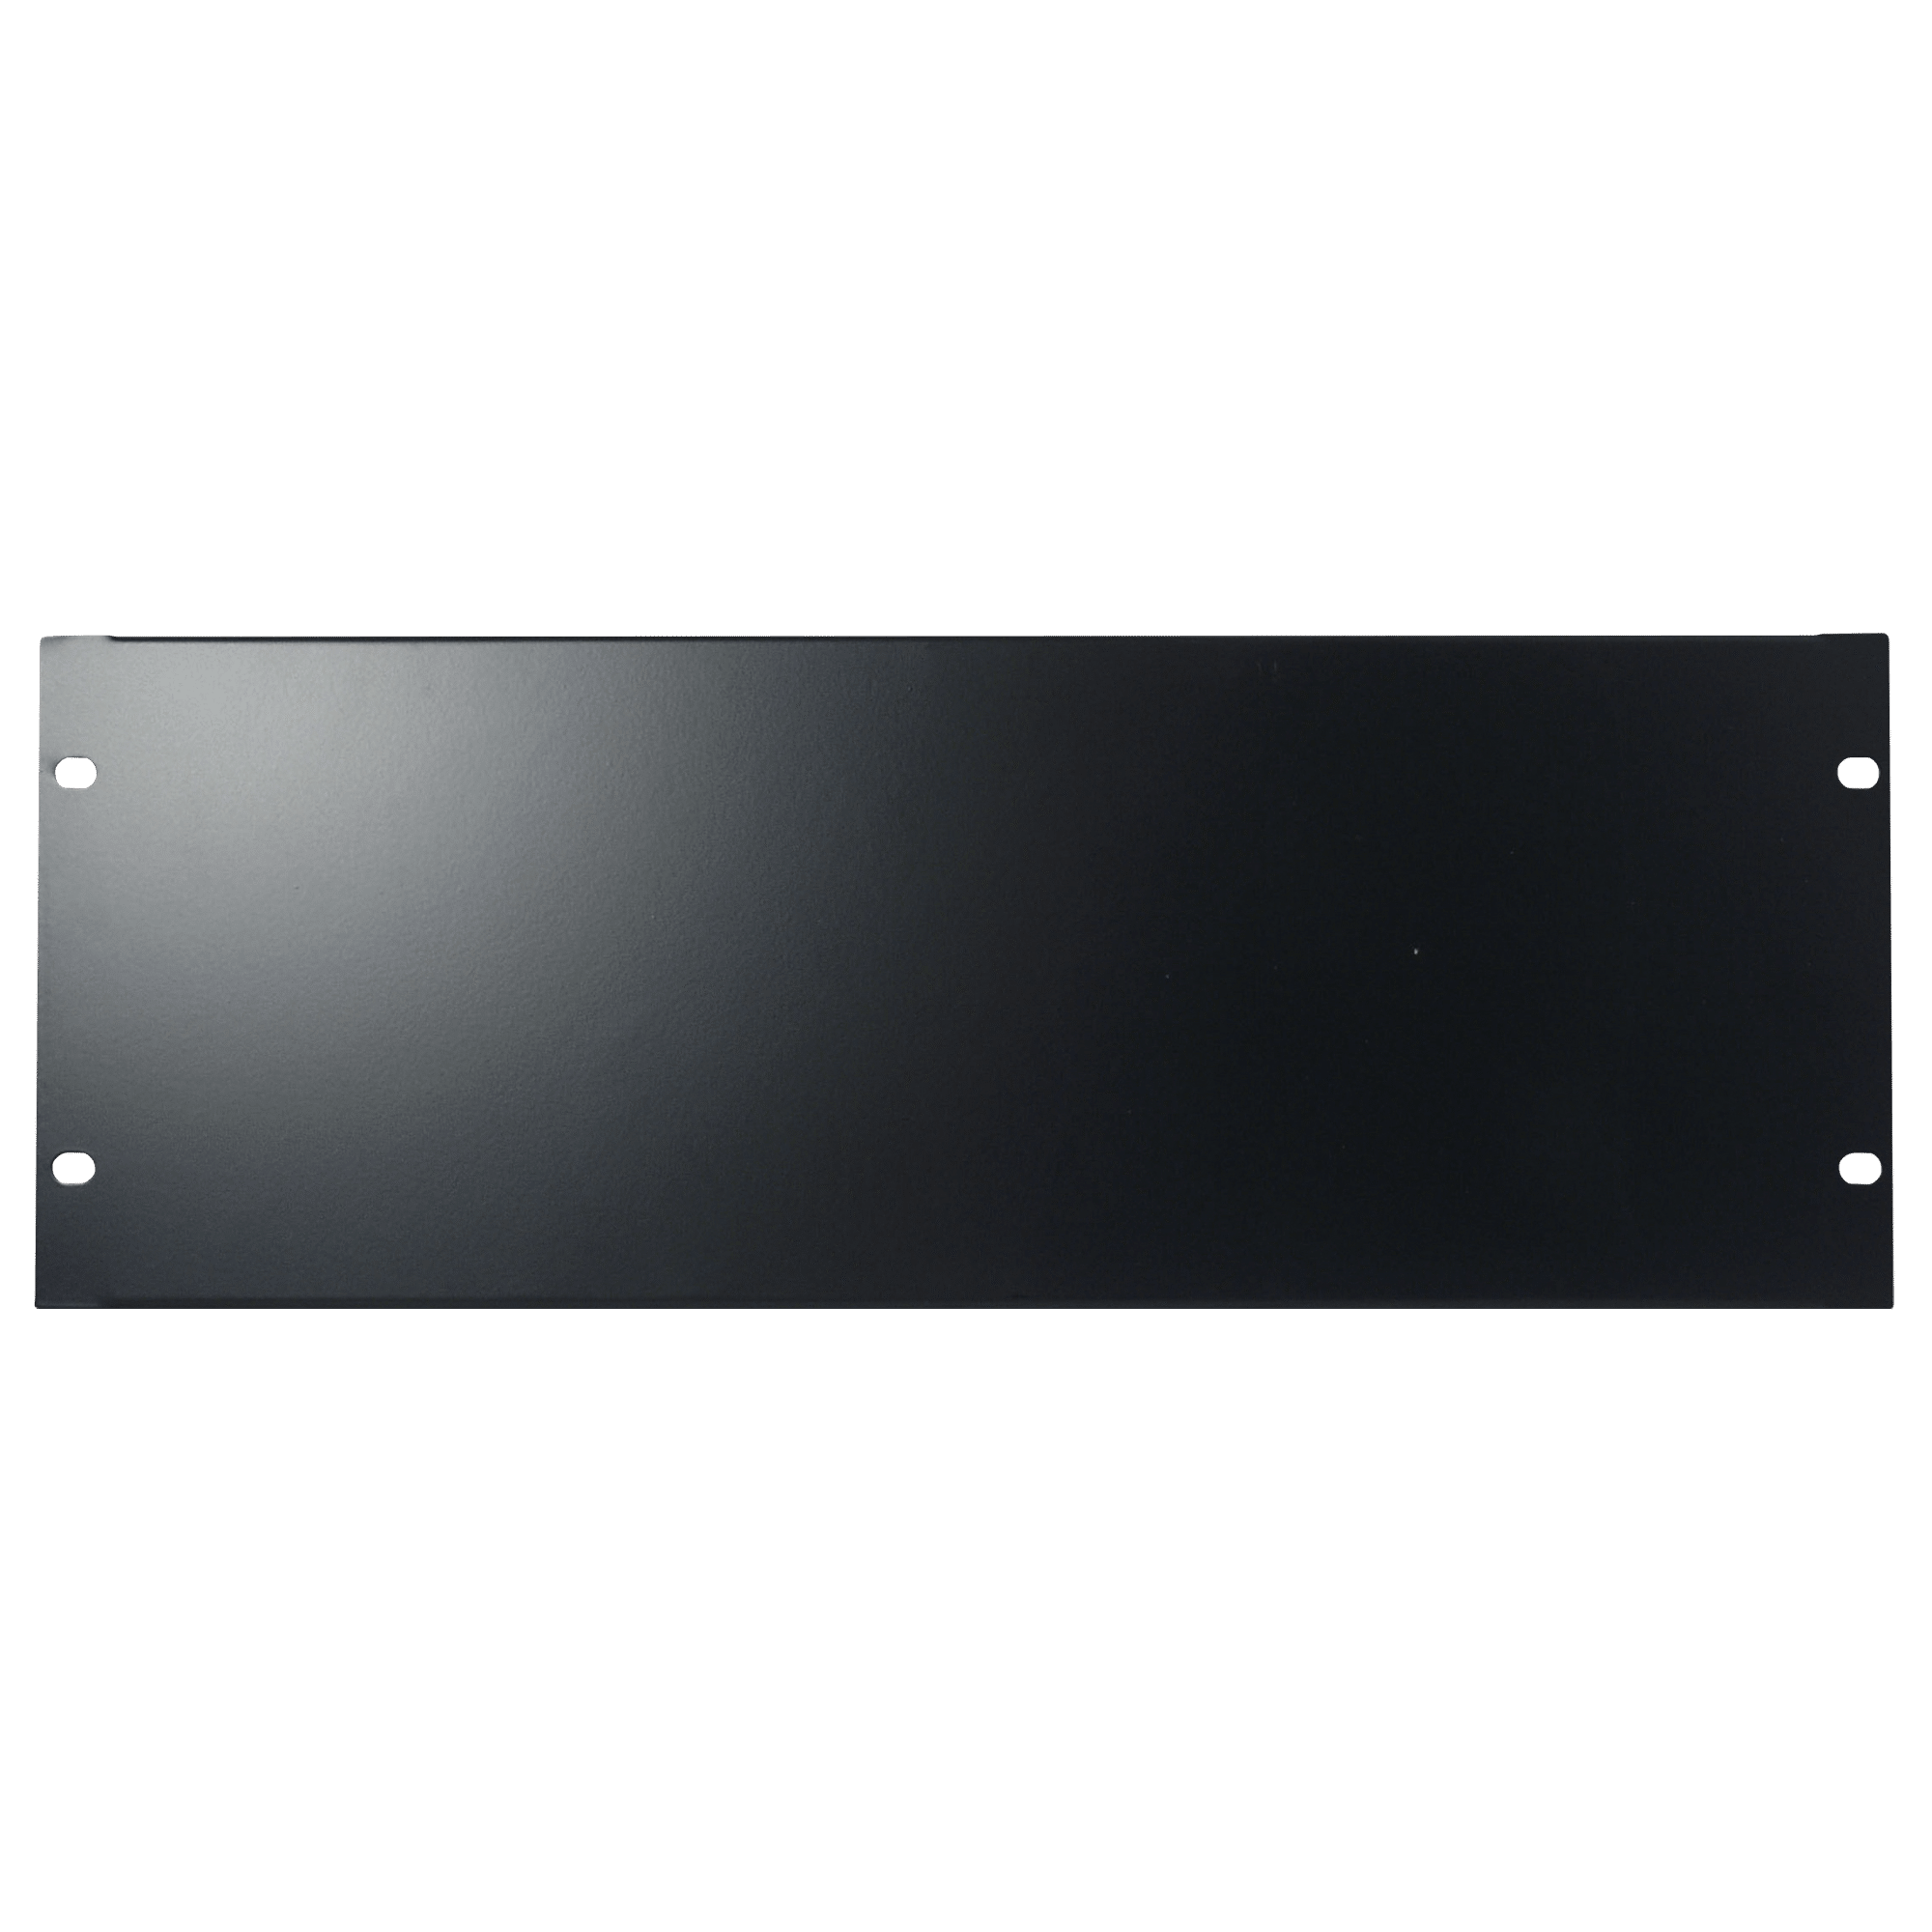 19 inch Blind Panel Black - Onlinediscowinkel.nl